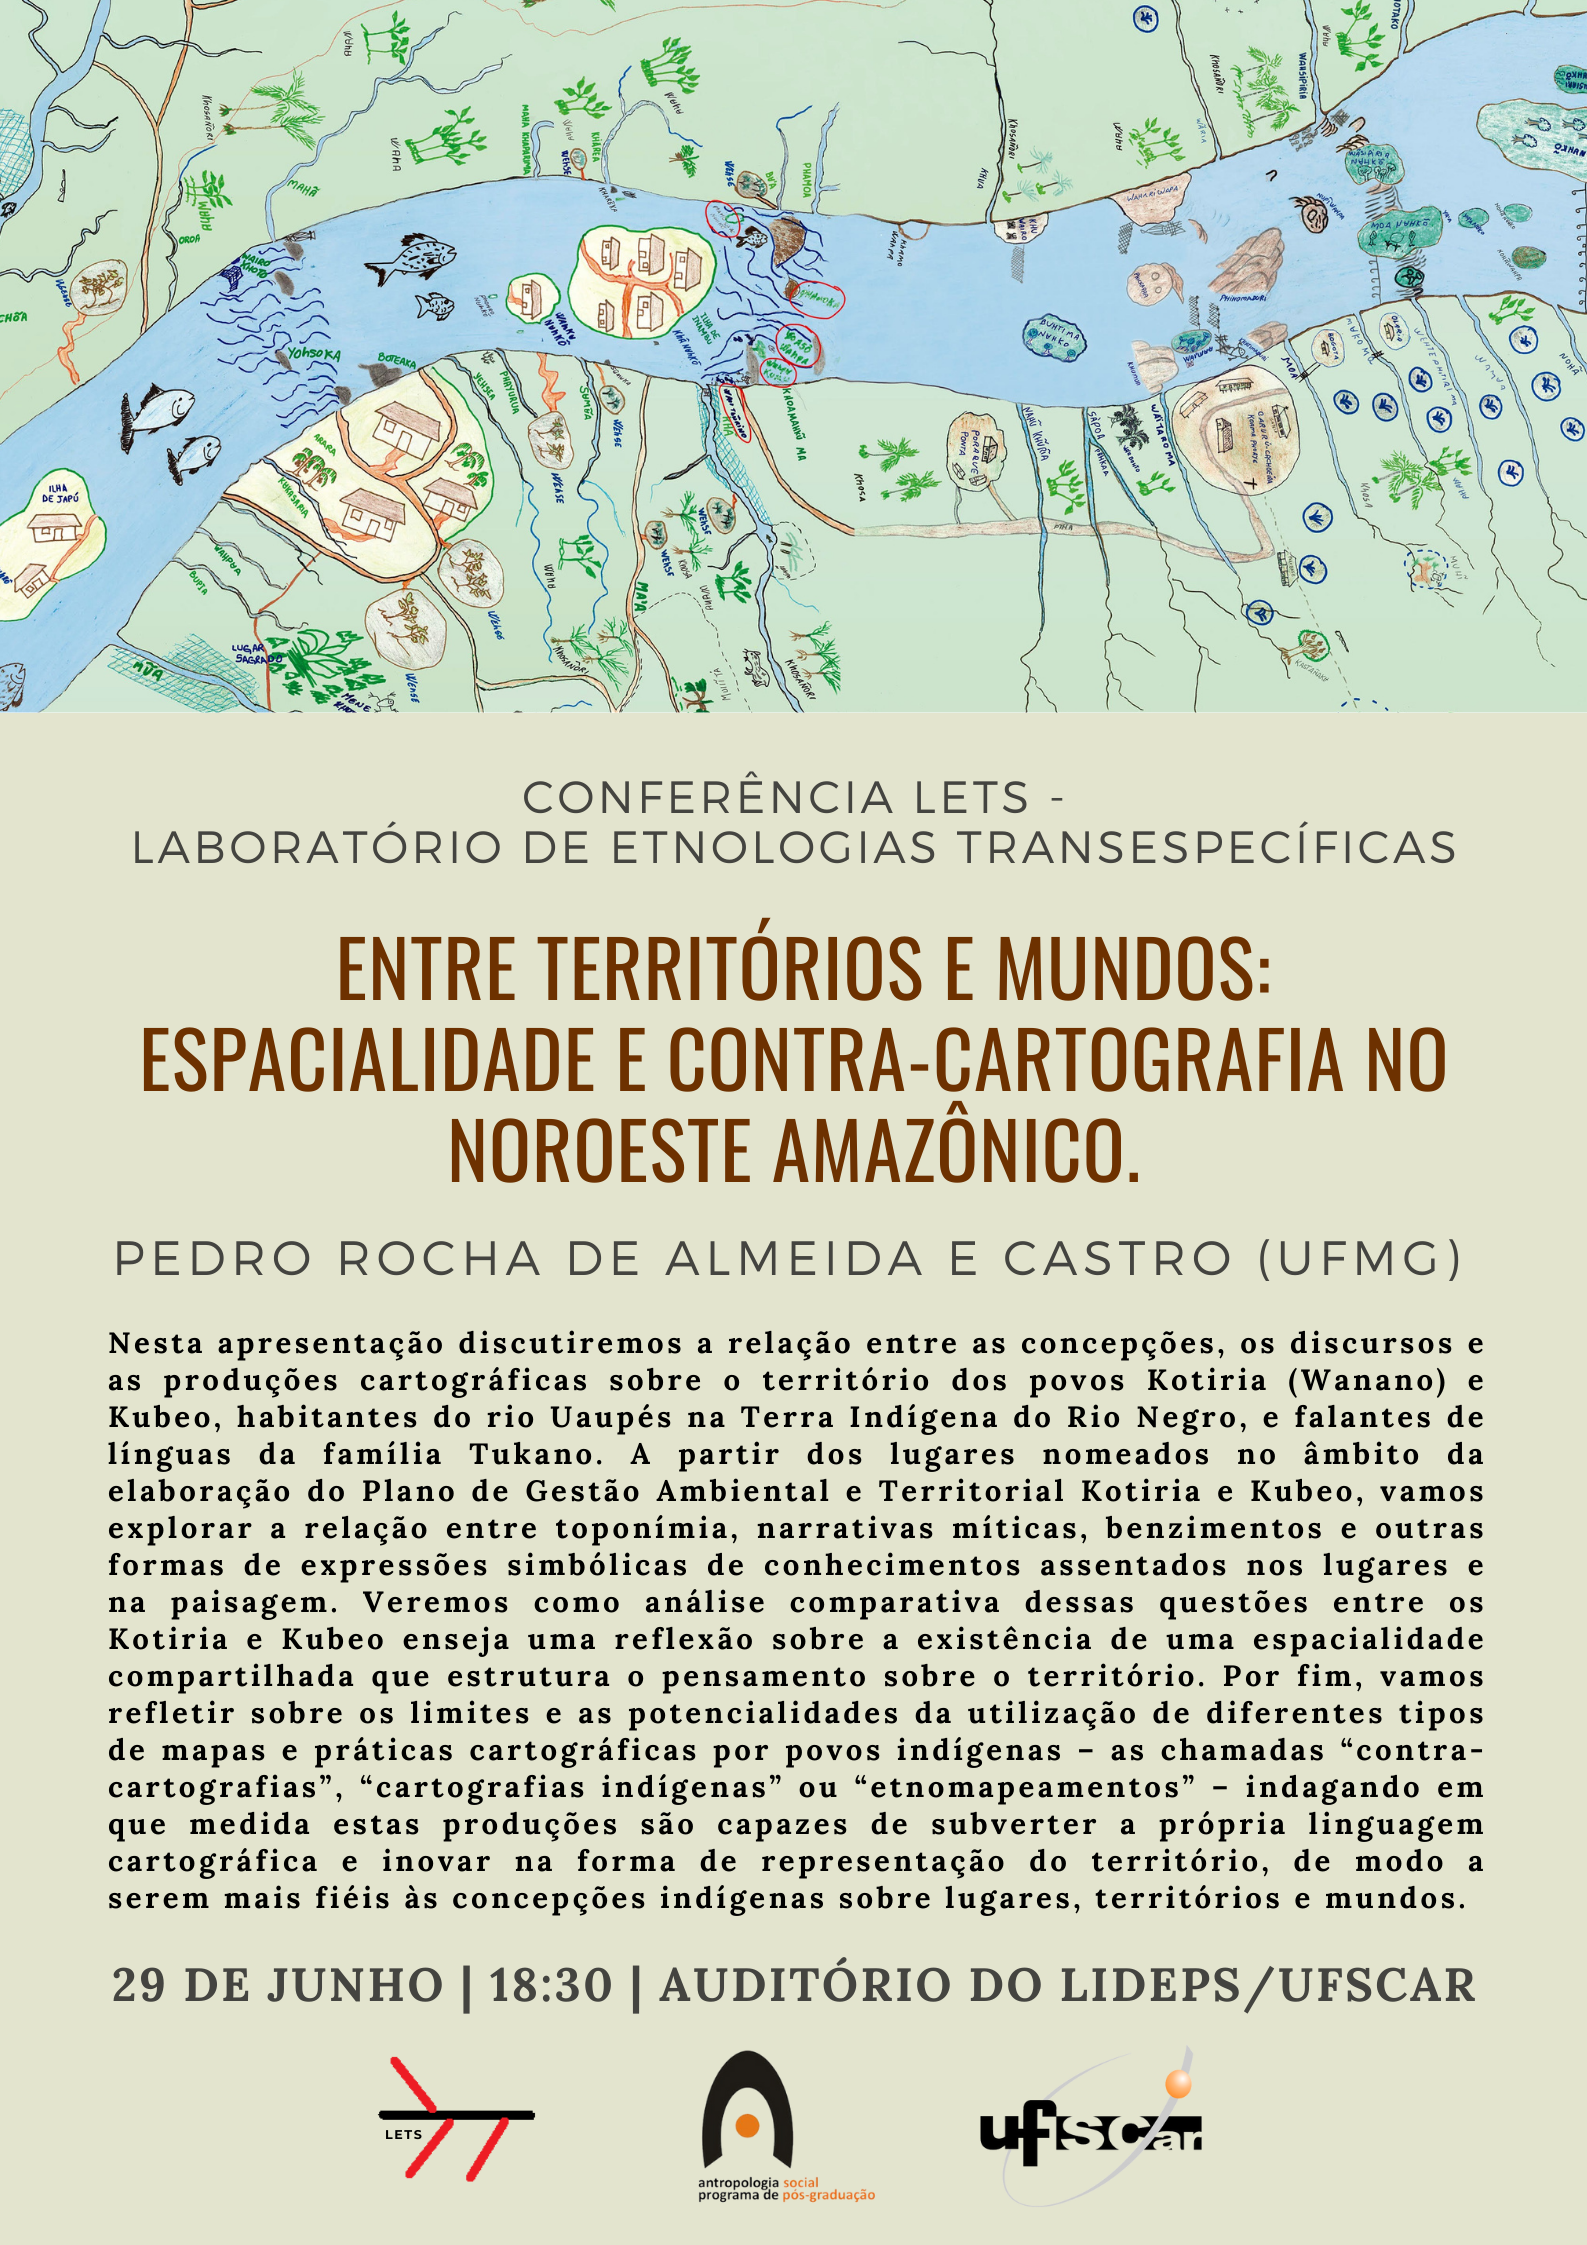 Conferência LETS (Laboratório de Etnologias Transespecíficas) - Entre territórios e mundos: espacialidade e contra-cartografia no Noroeste Amazônico, com Pedro Rocha de Almeida e Castro (UFMG).